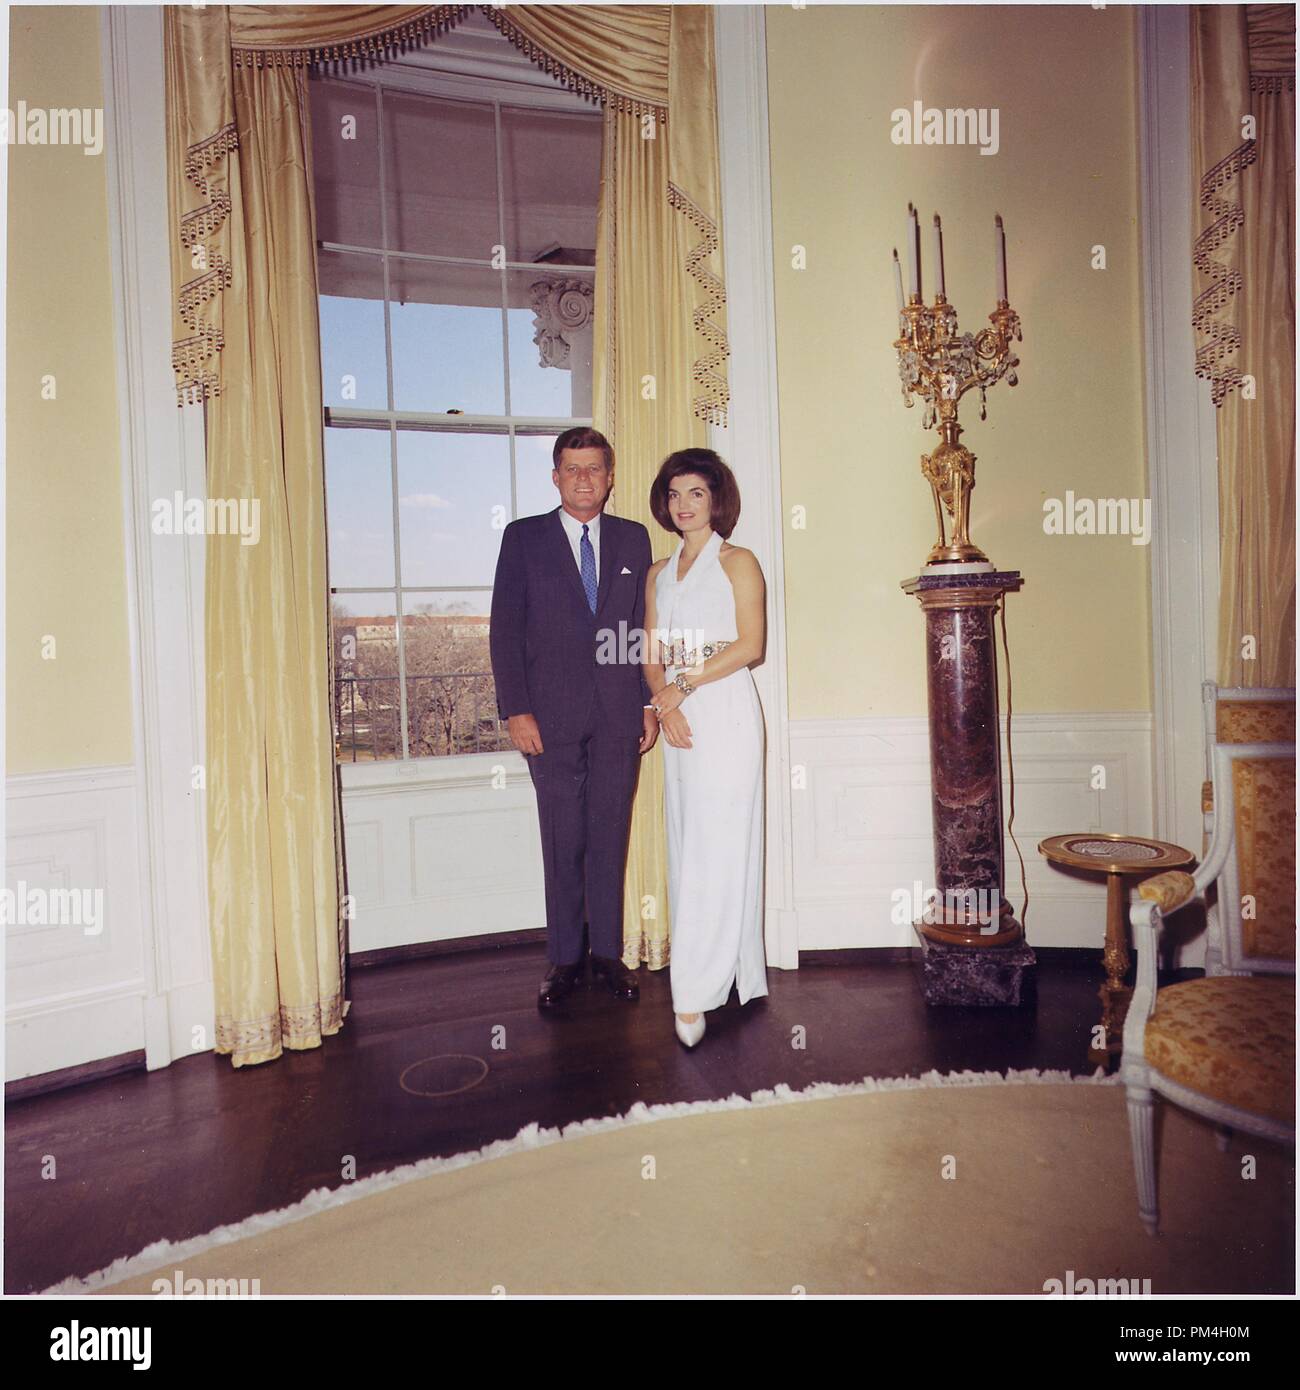 Le président et la Première Dame, Portrait photographique. Le président John F. Kennedy, Mme Jacqueline Kennedy. Maison blanche, jaune salle ovale, 28 mars 1963 Référence de fichier #  1003 166THA Banque D'Images